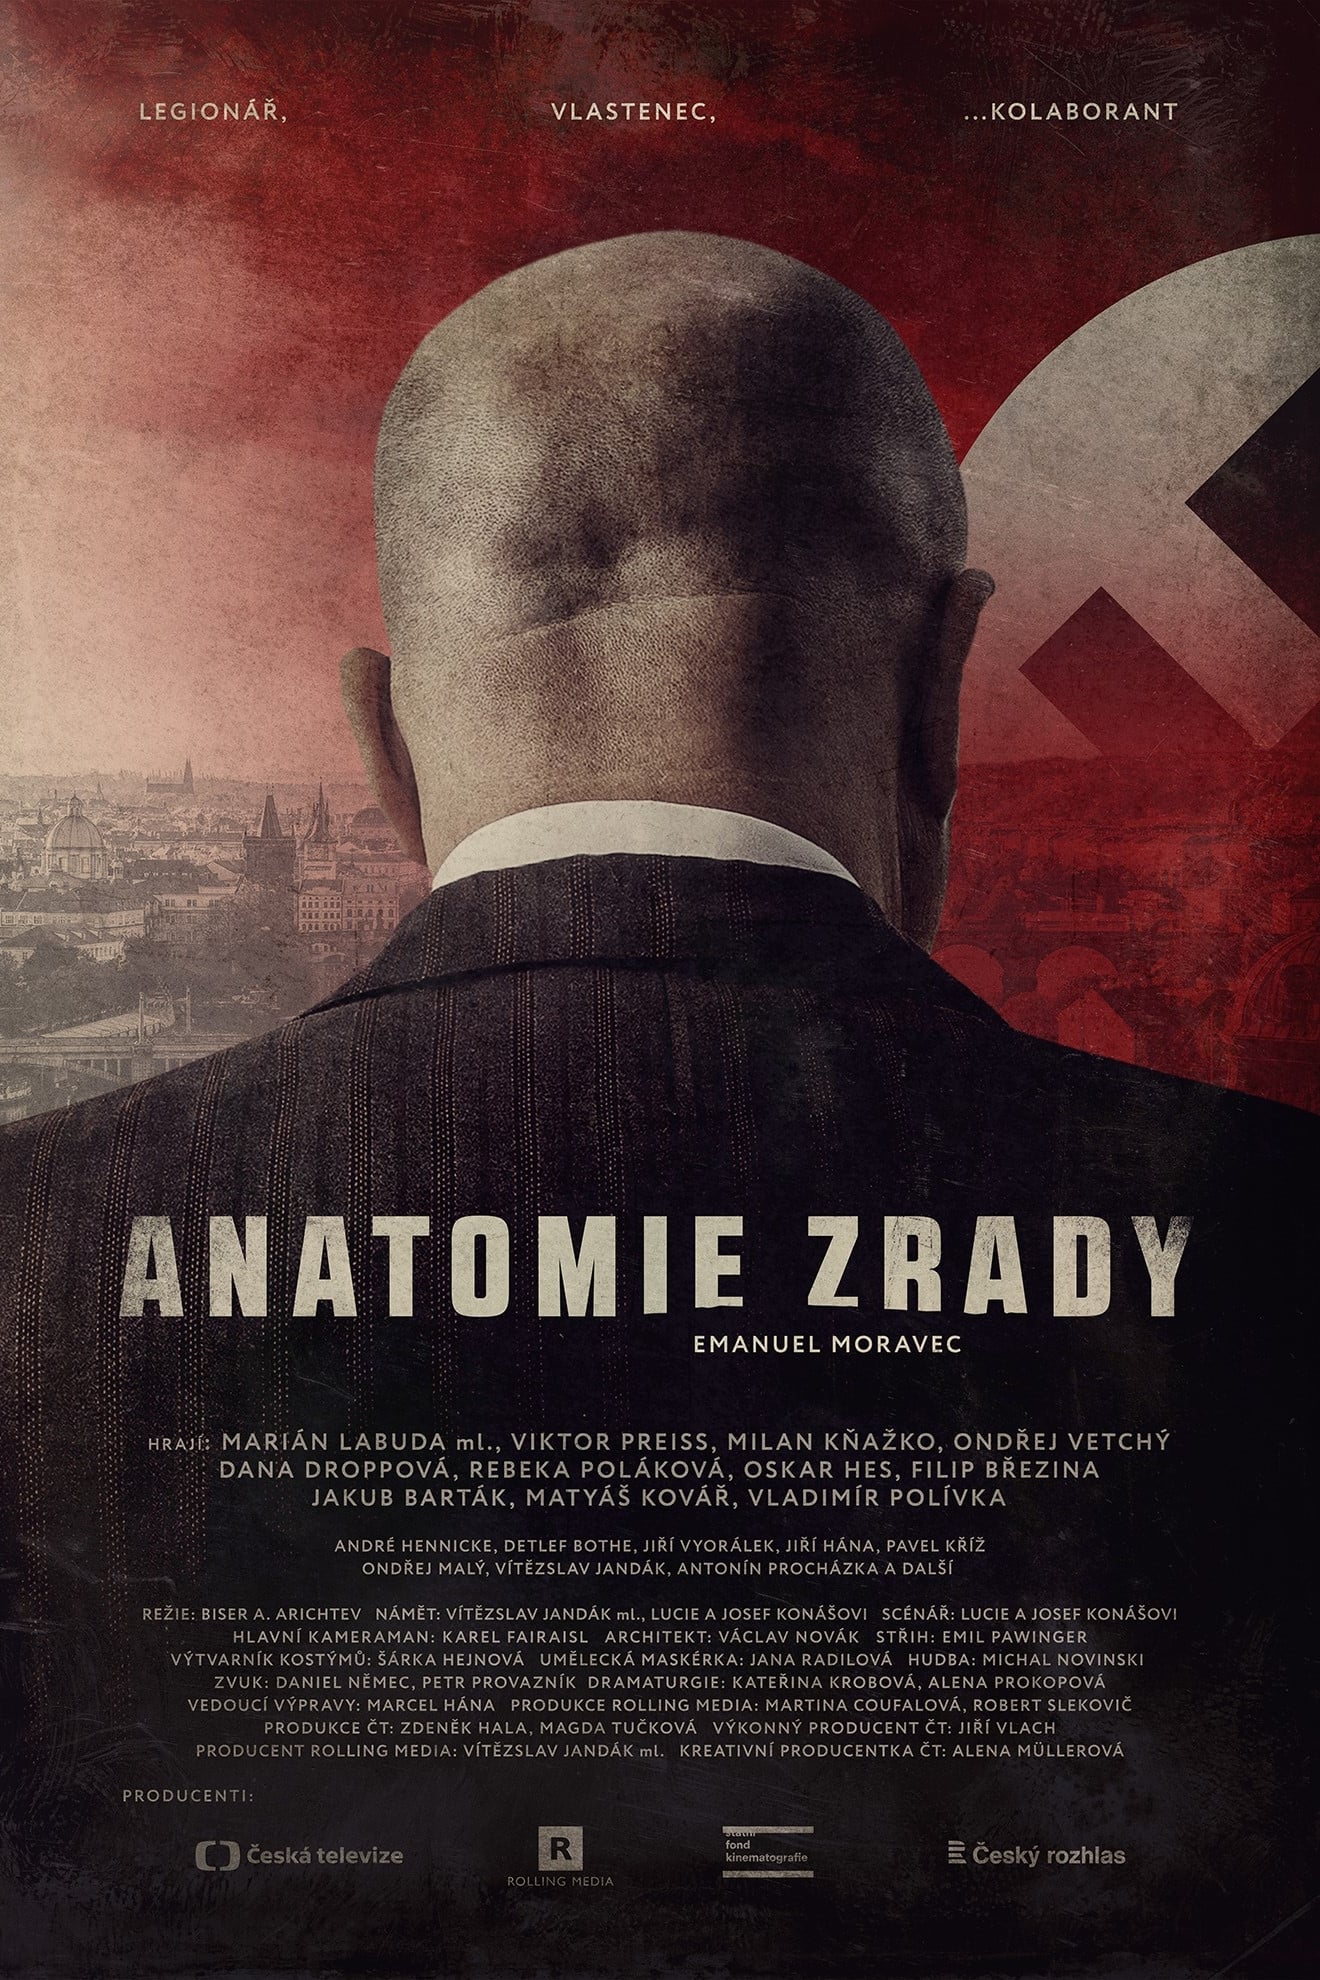 Plakát pro film “Anatomie zrady”